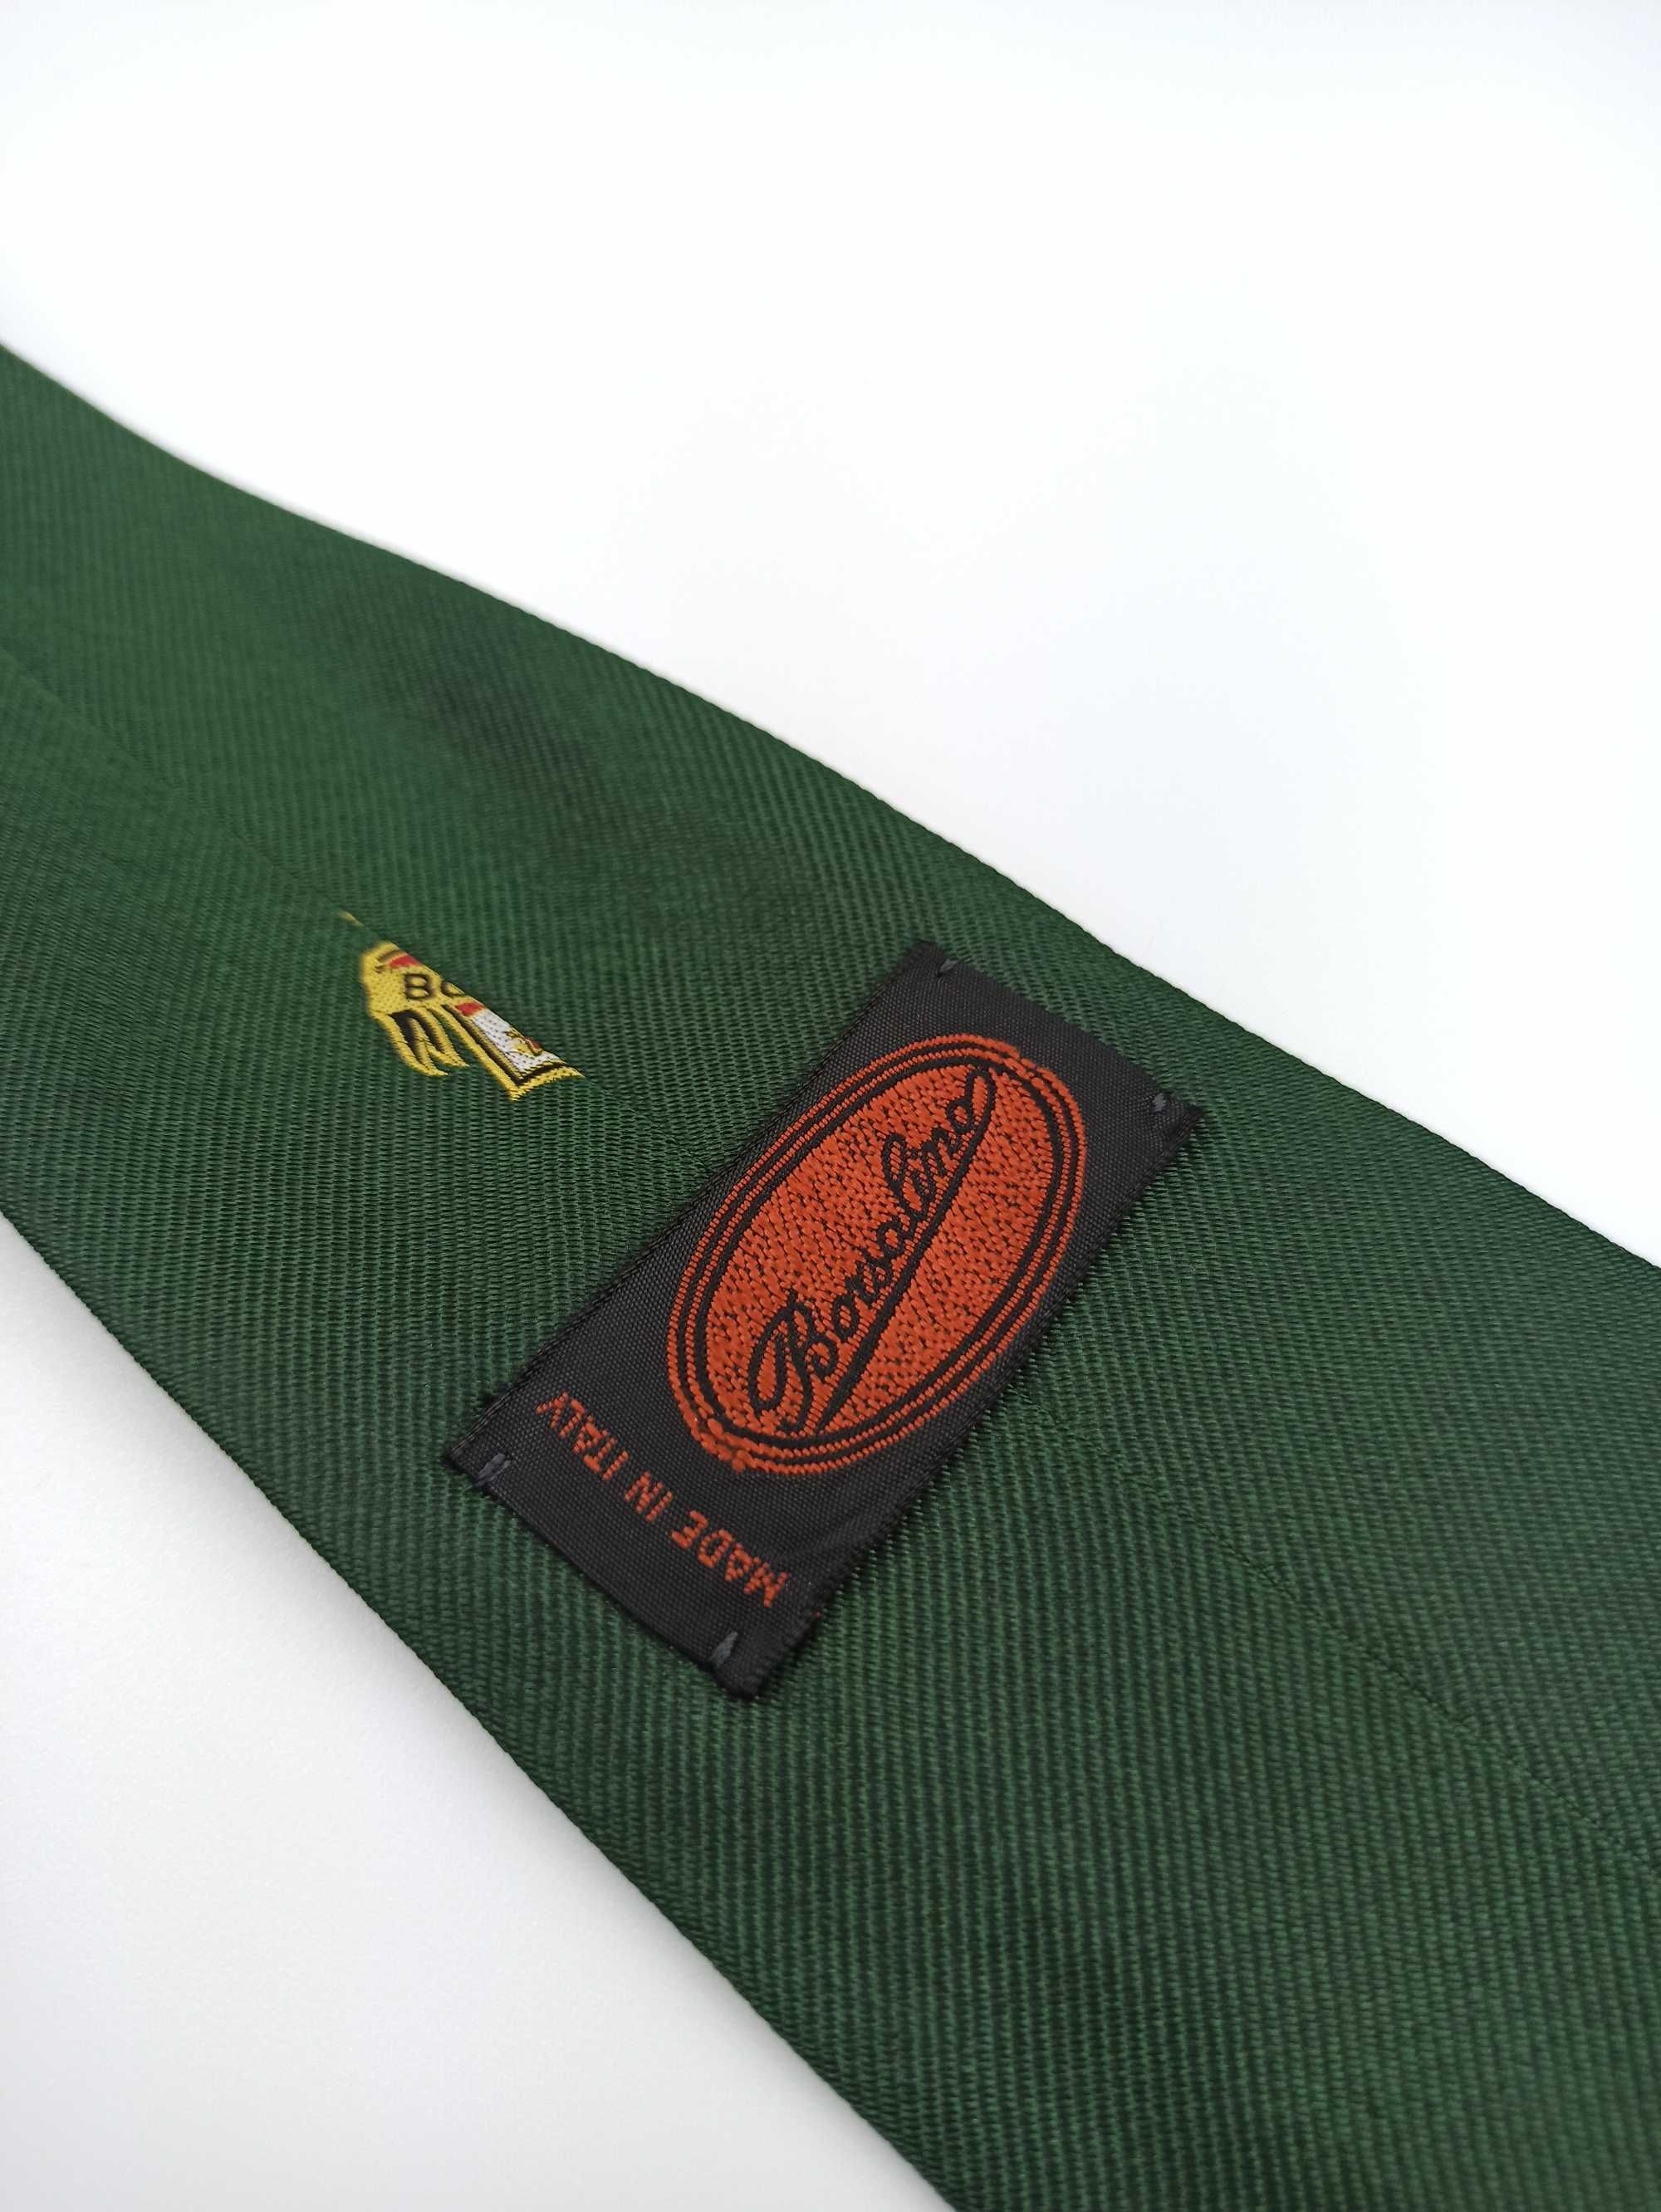 Borsalino jedwabny krawat emblemat herb f9